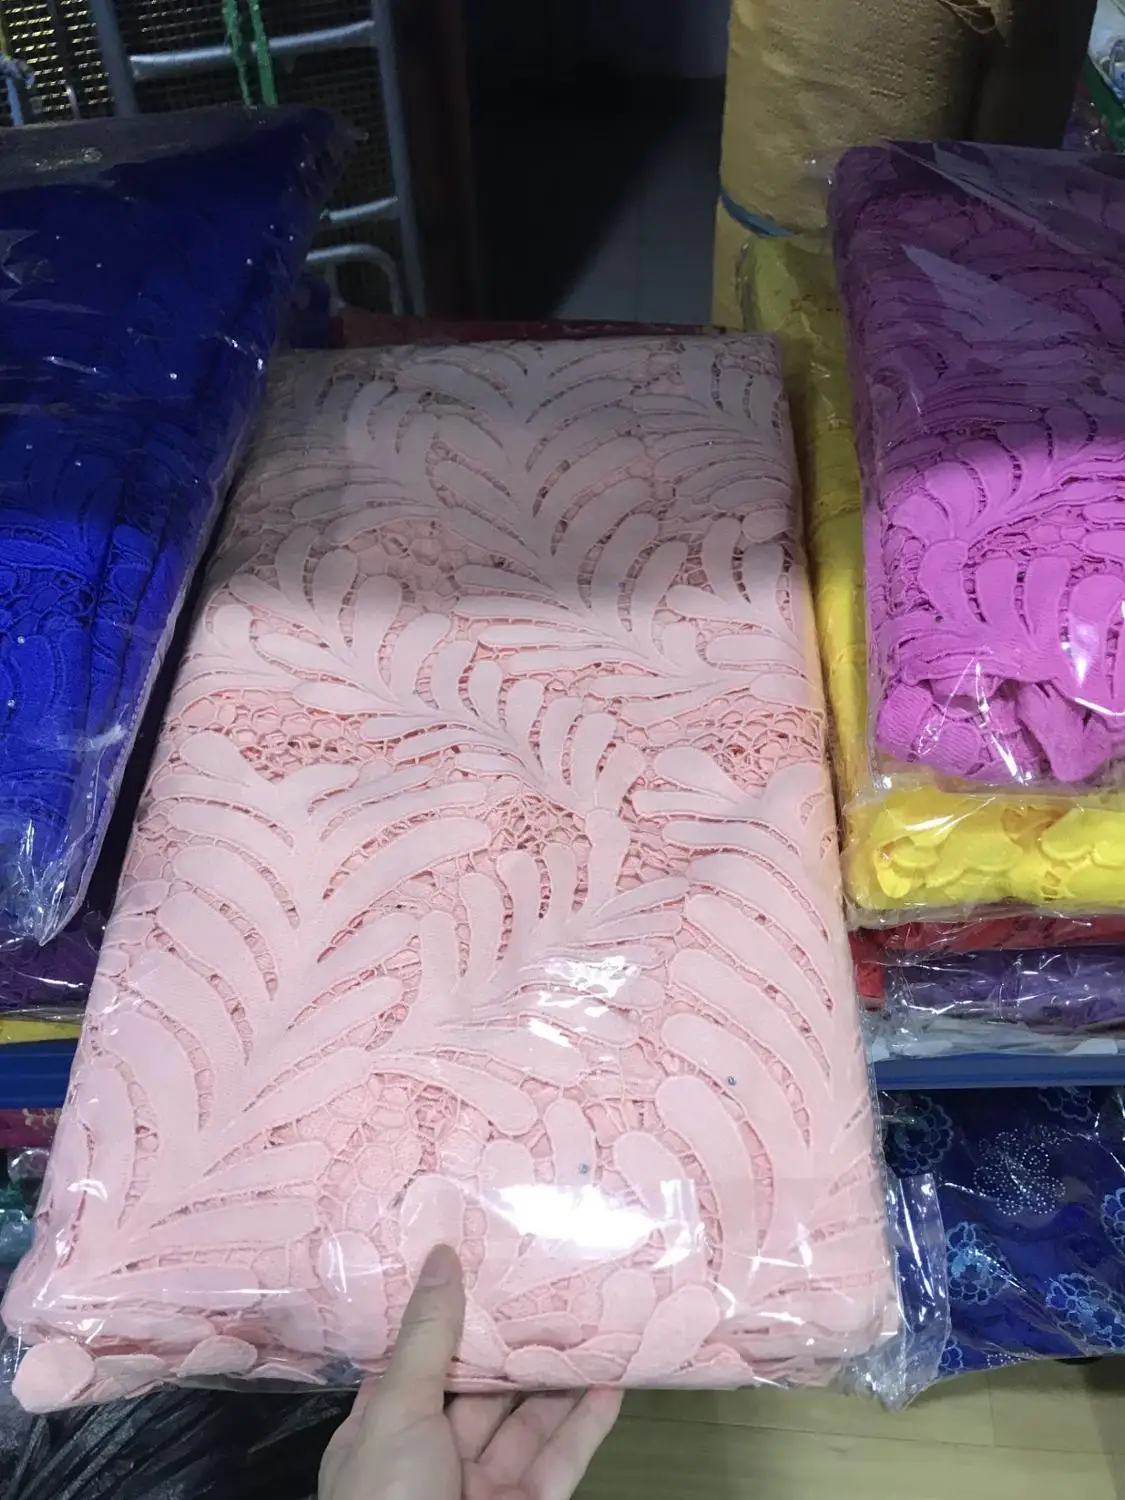 Африканская кружевная ткань из нитей детская розовая кружевная ткань гипюр кружевная ткань с камнями tissu dentelle высокое качество 5 ярдов